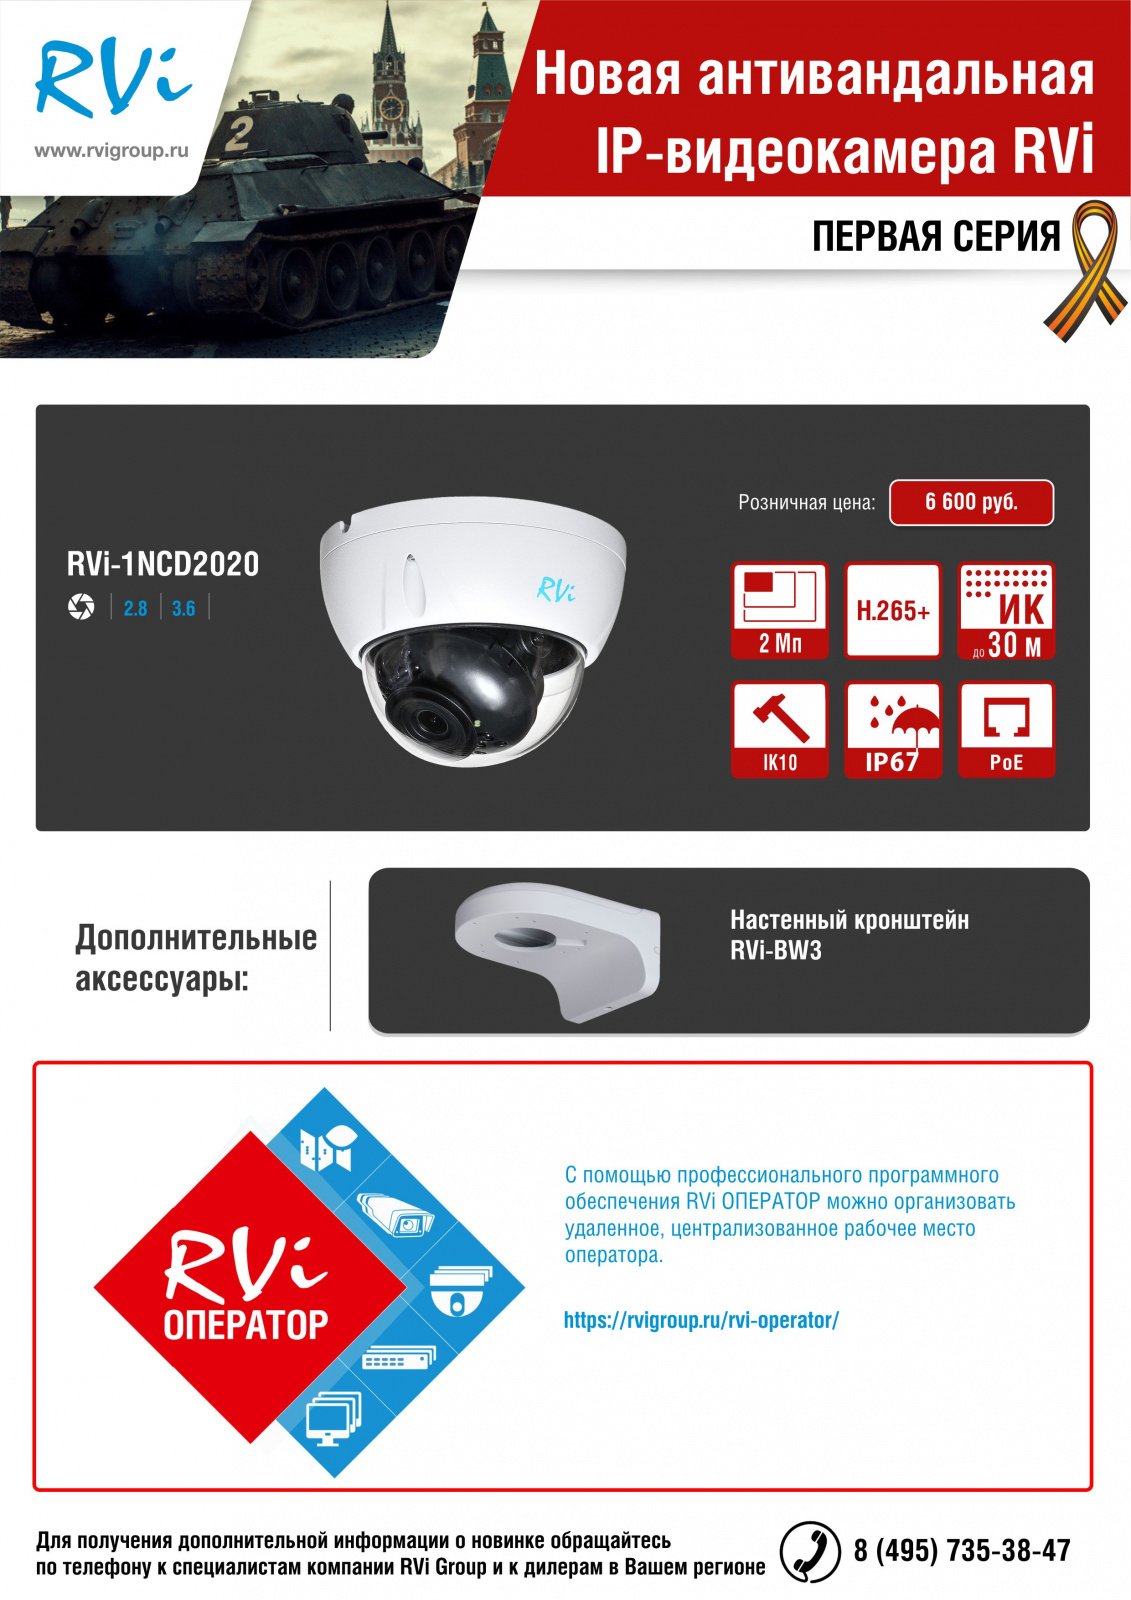 Новая антивандальная IP-видеокамера RVi 